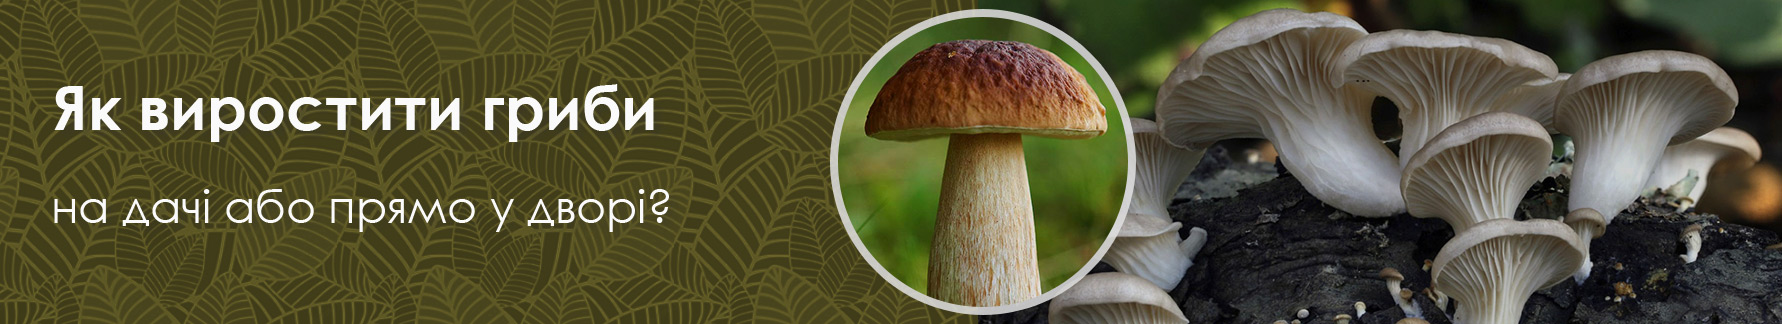 Как вырастить грибы из мицелия